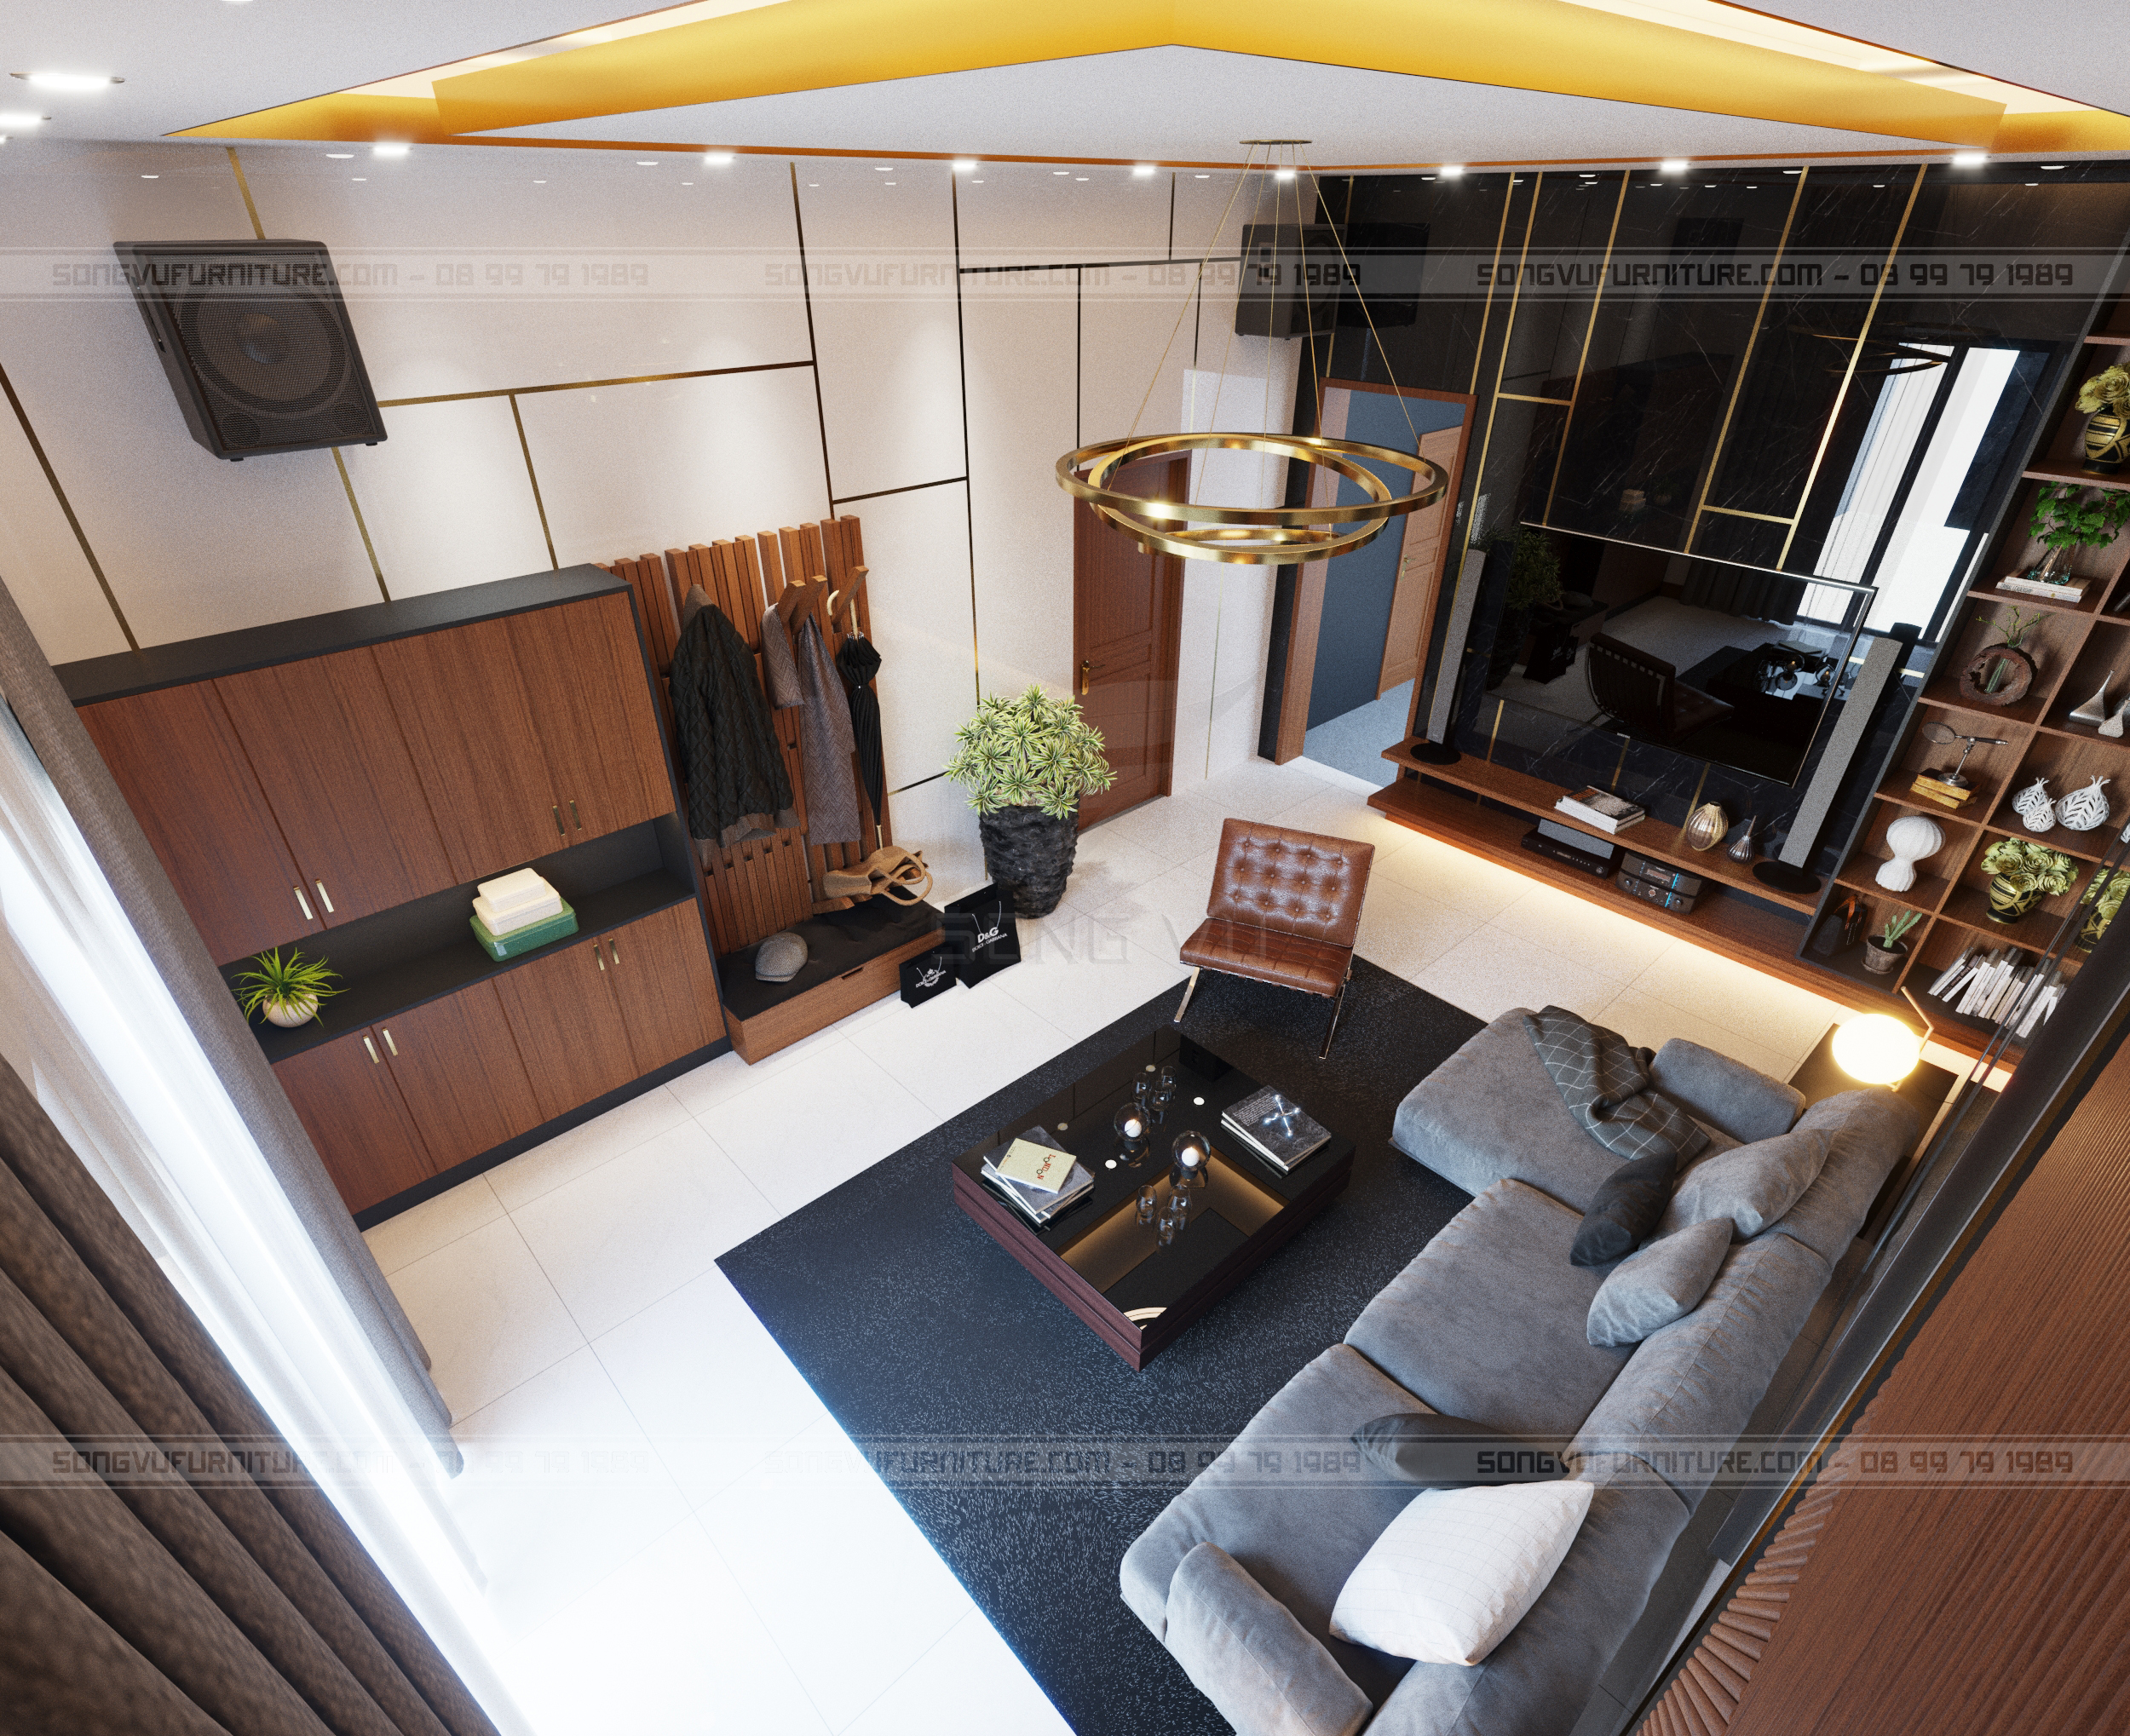 nội thất Song Vũ tạo không gian sang trọng phù hợp nhà riêng,chung cư, khách sạn, văn phòng, quán cafe  